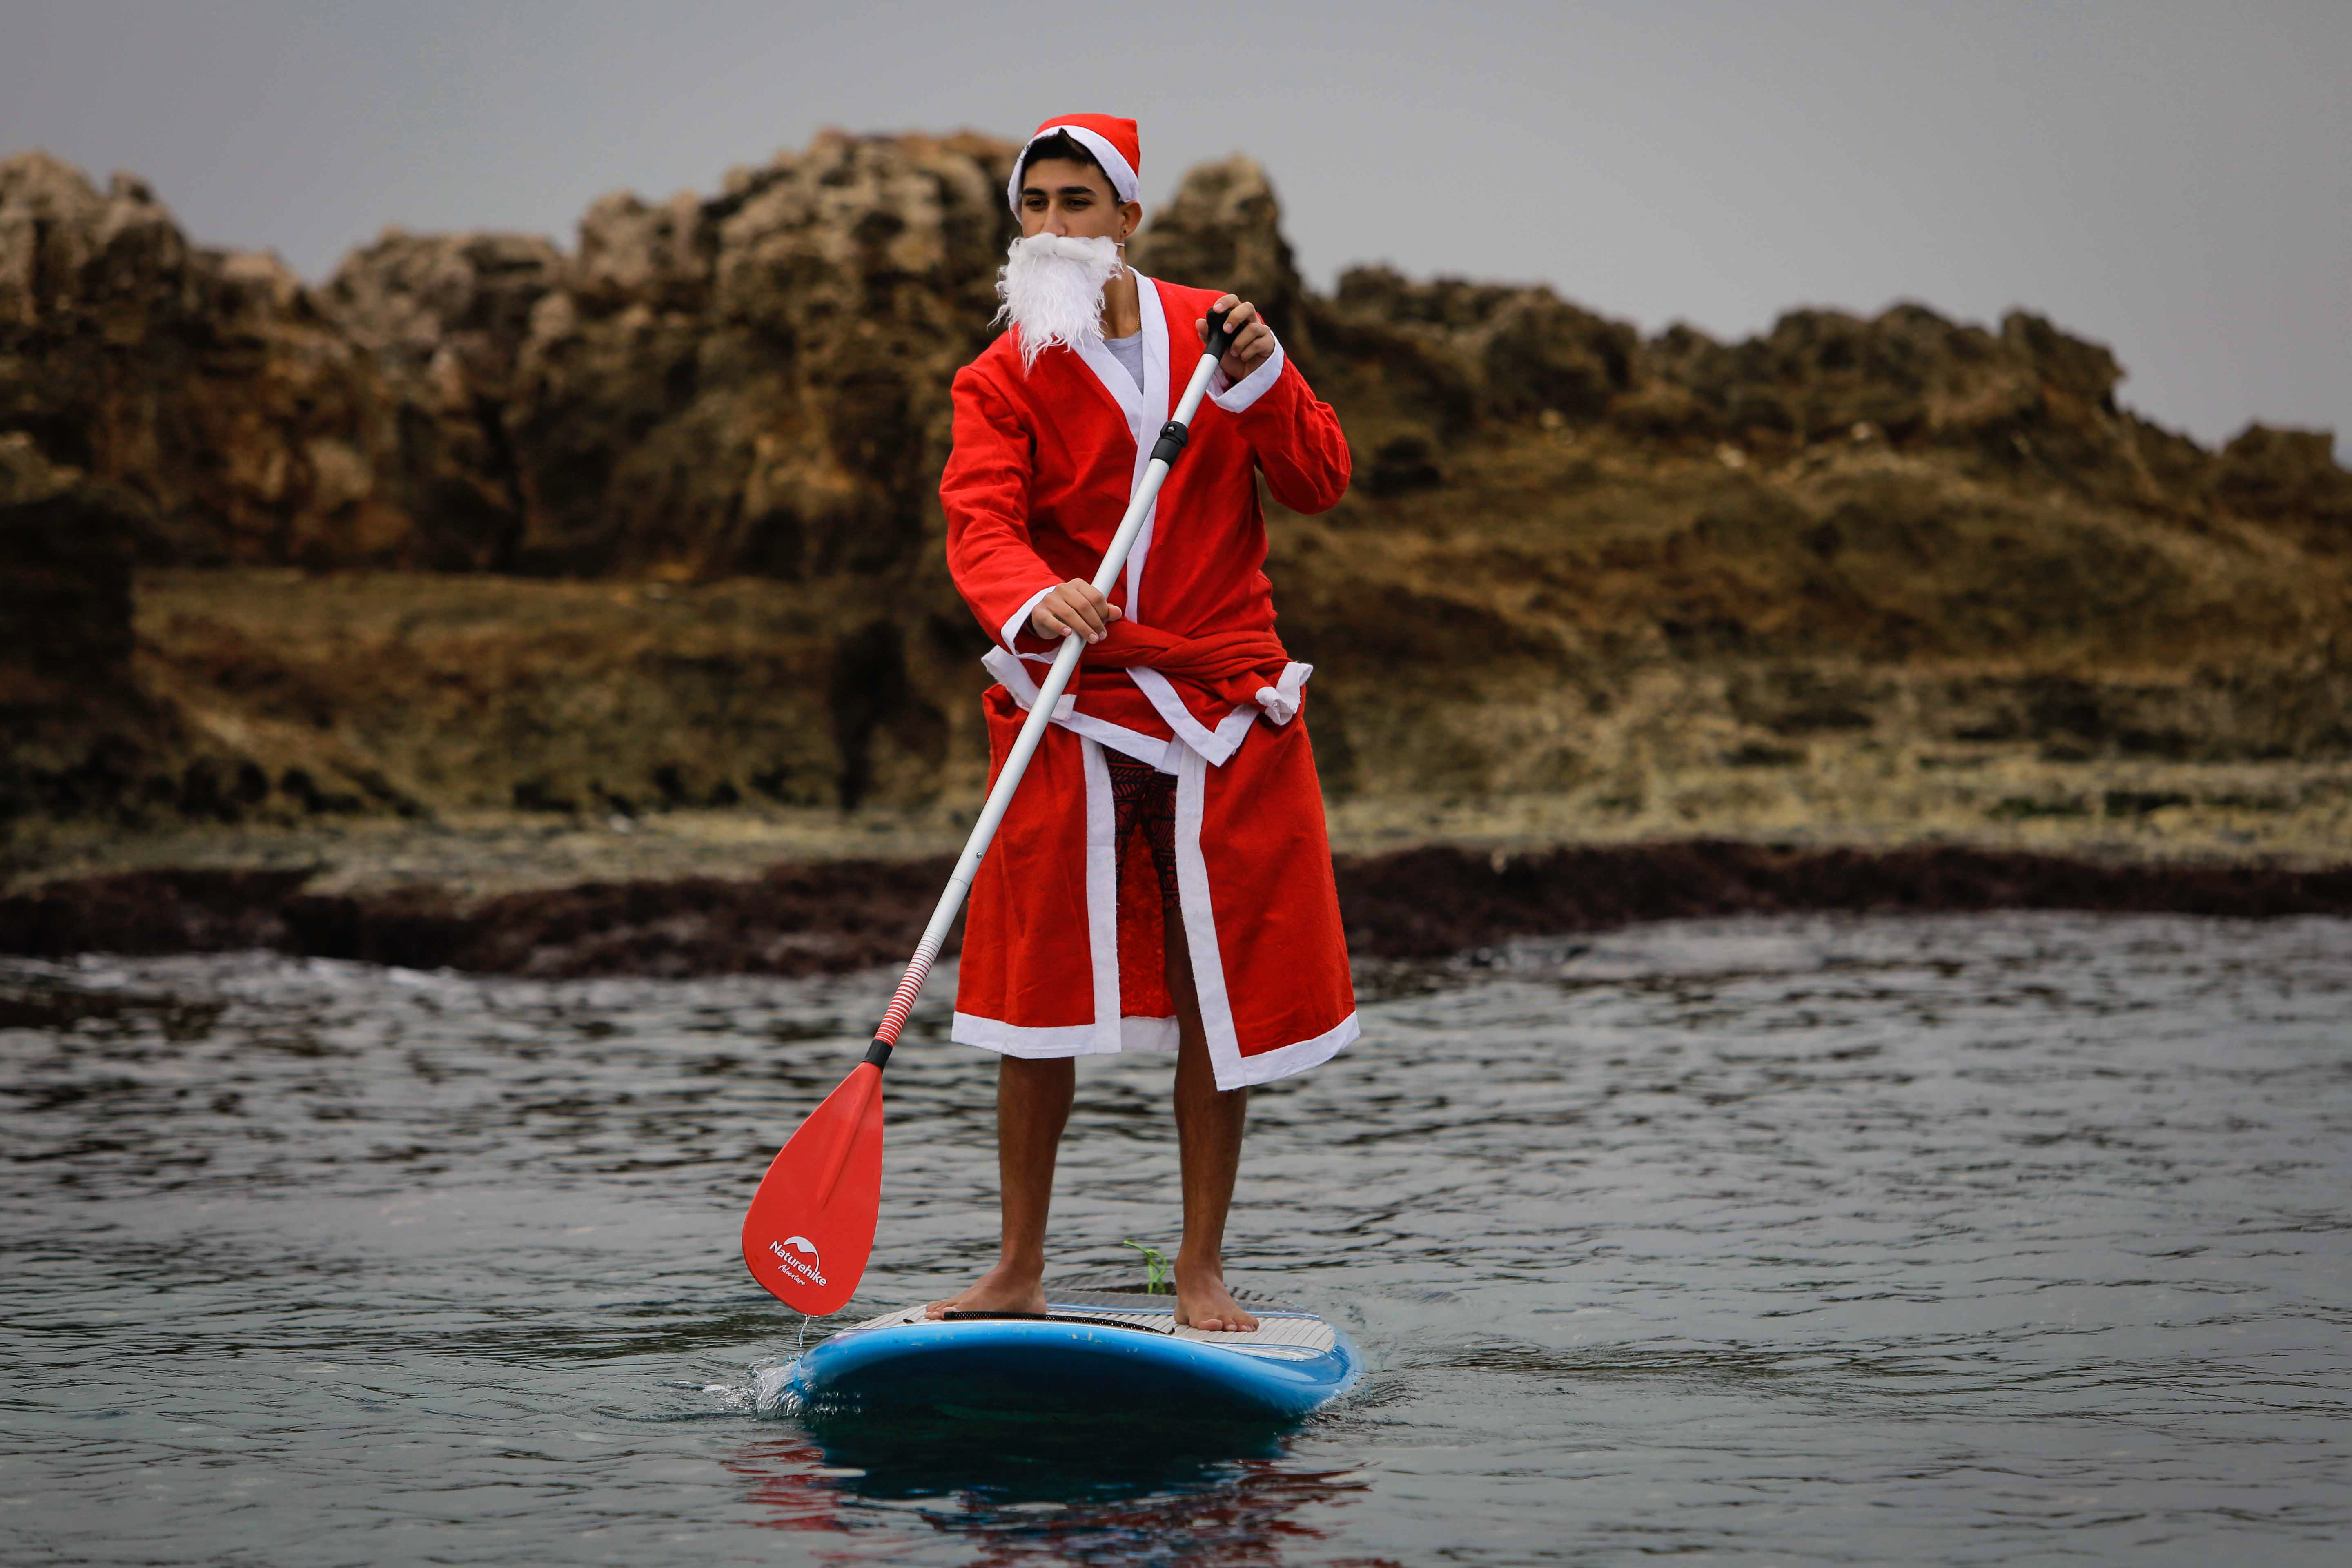 Un hombre libanés vestido con un traje de Papá Noel se pasea en un remo de pie en la ciudad costera de Batroun, en el norte del Líbano (Foto de Ibrahim Chalhoub / AFP)